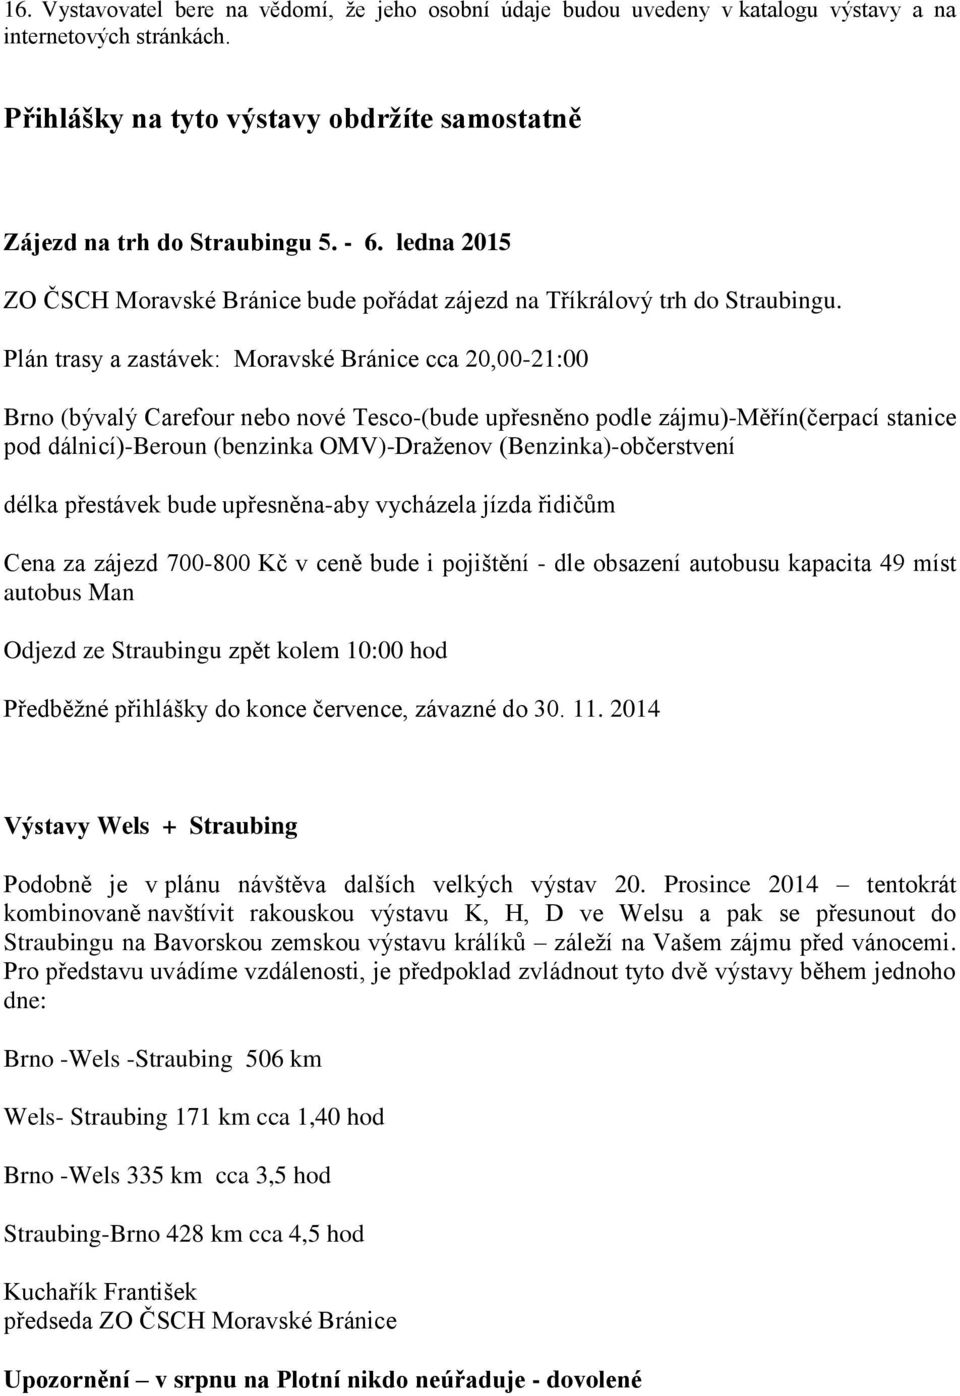 Plán trasy a zastávek: Moravské Bránice cca 20,00-21:00 Brno (bývalý Carefour nebo nové Tesco-(bude upřesněno podle zájmu)-měřín(čerpací stanice pod dálnicí)-beroun (benzinka OMV)-Draženov